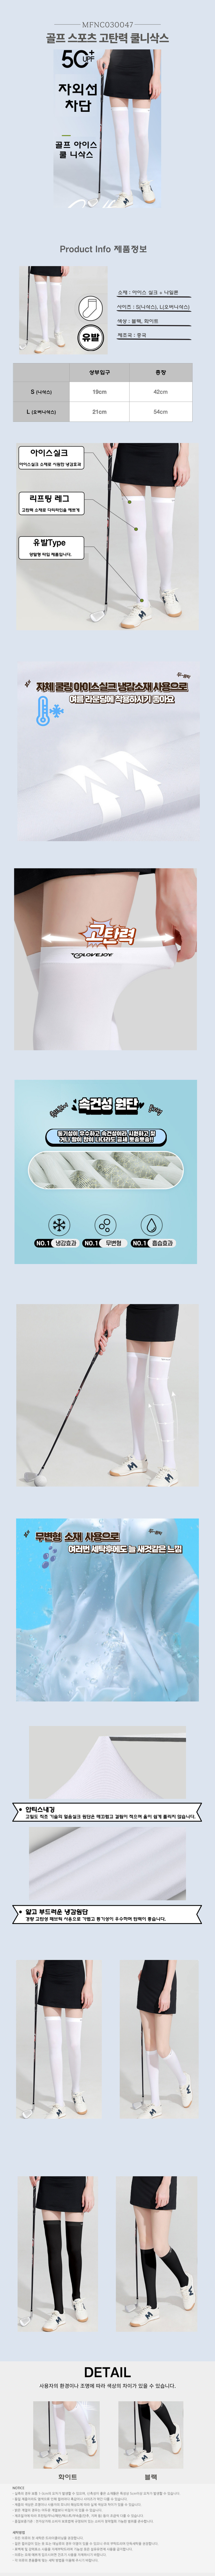 Cool-knee-socks.jpg